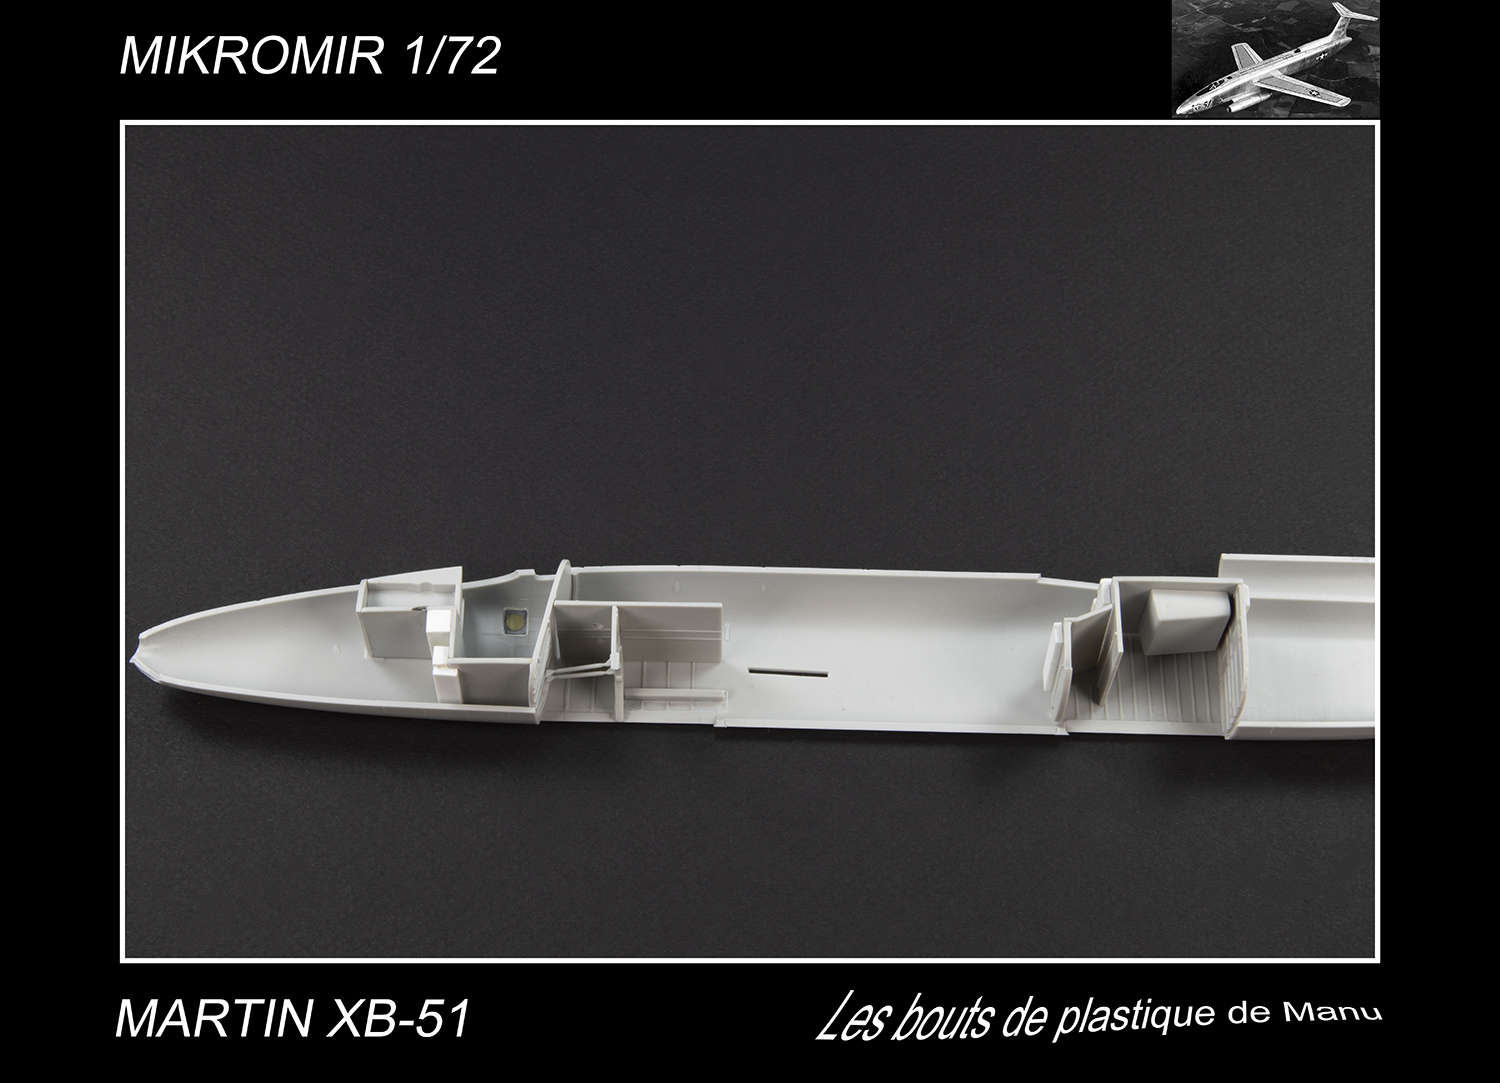 [Mikromir] Martin XB-51 - Les moteurs Eua9